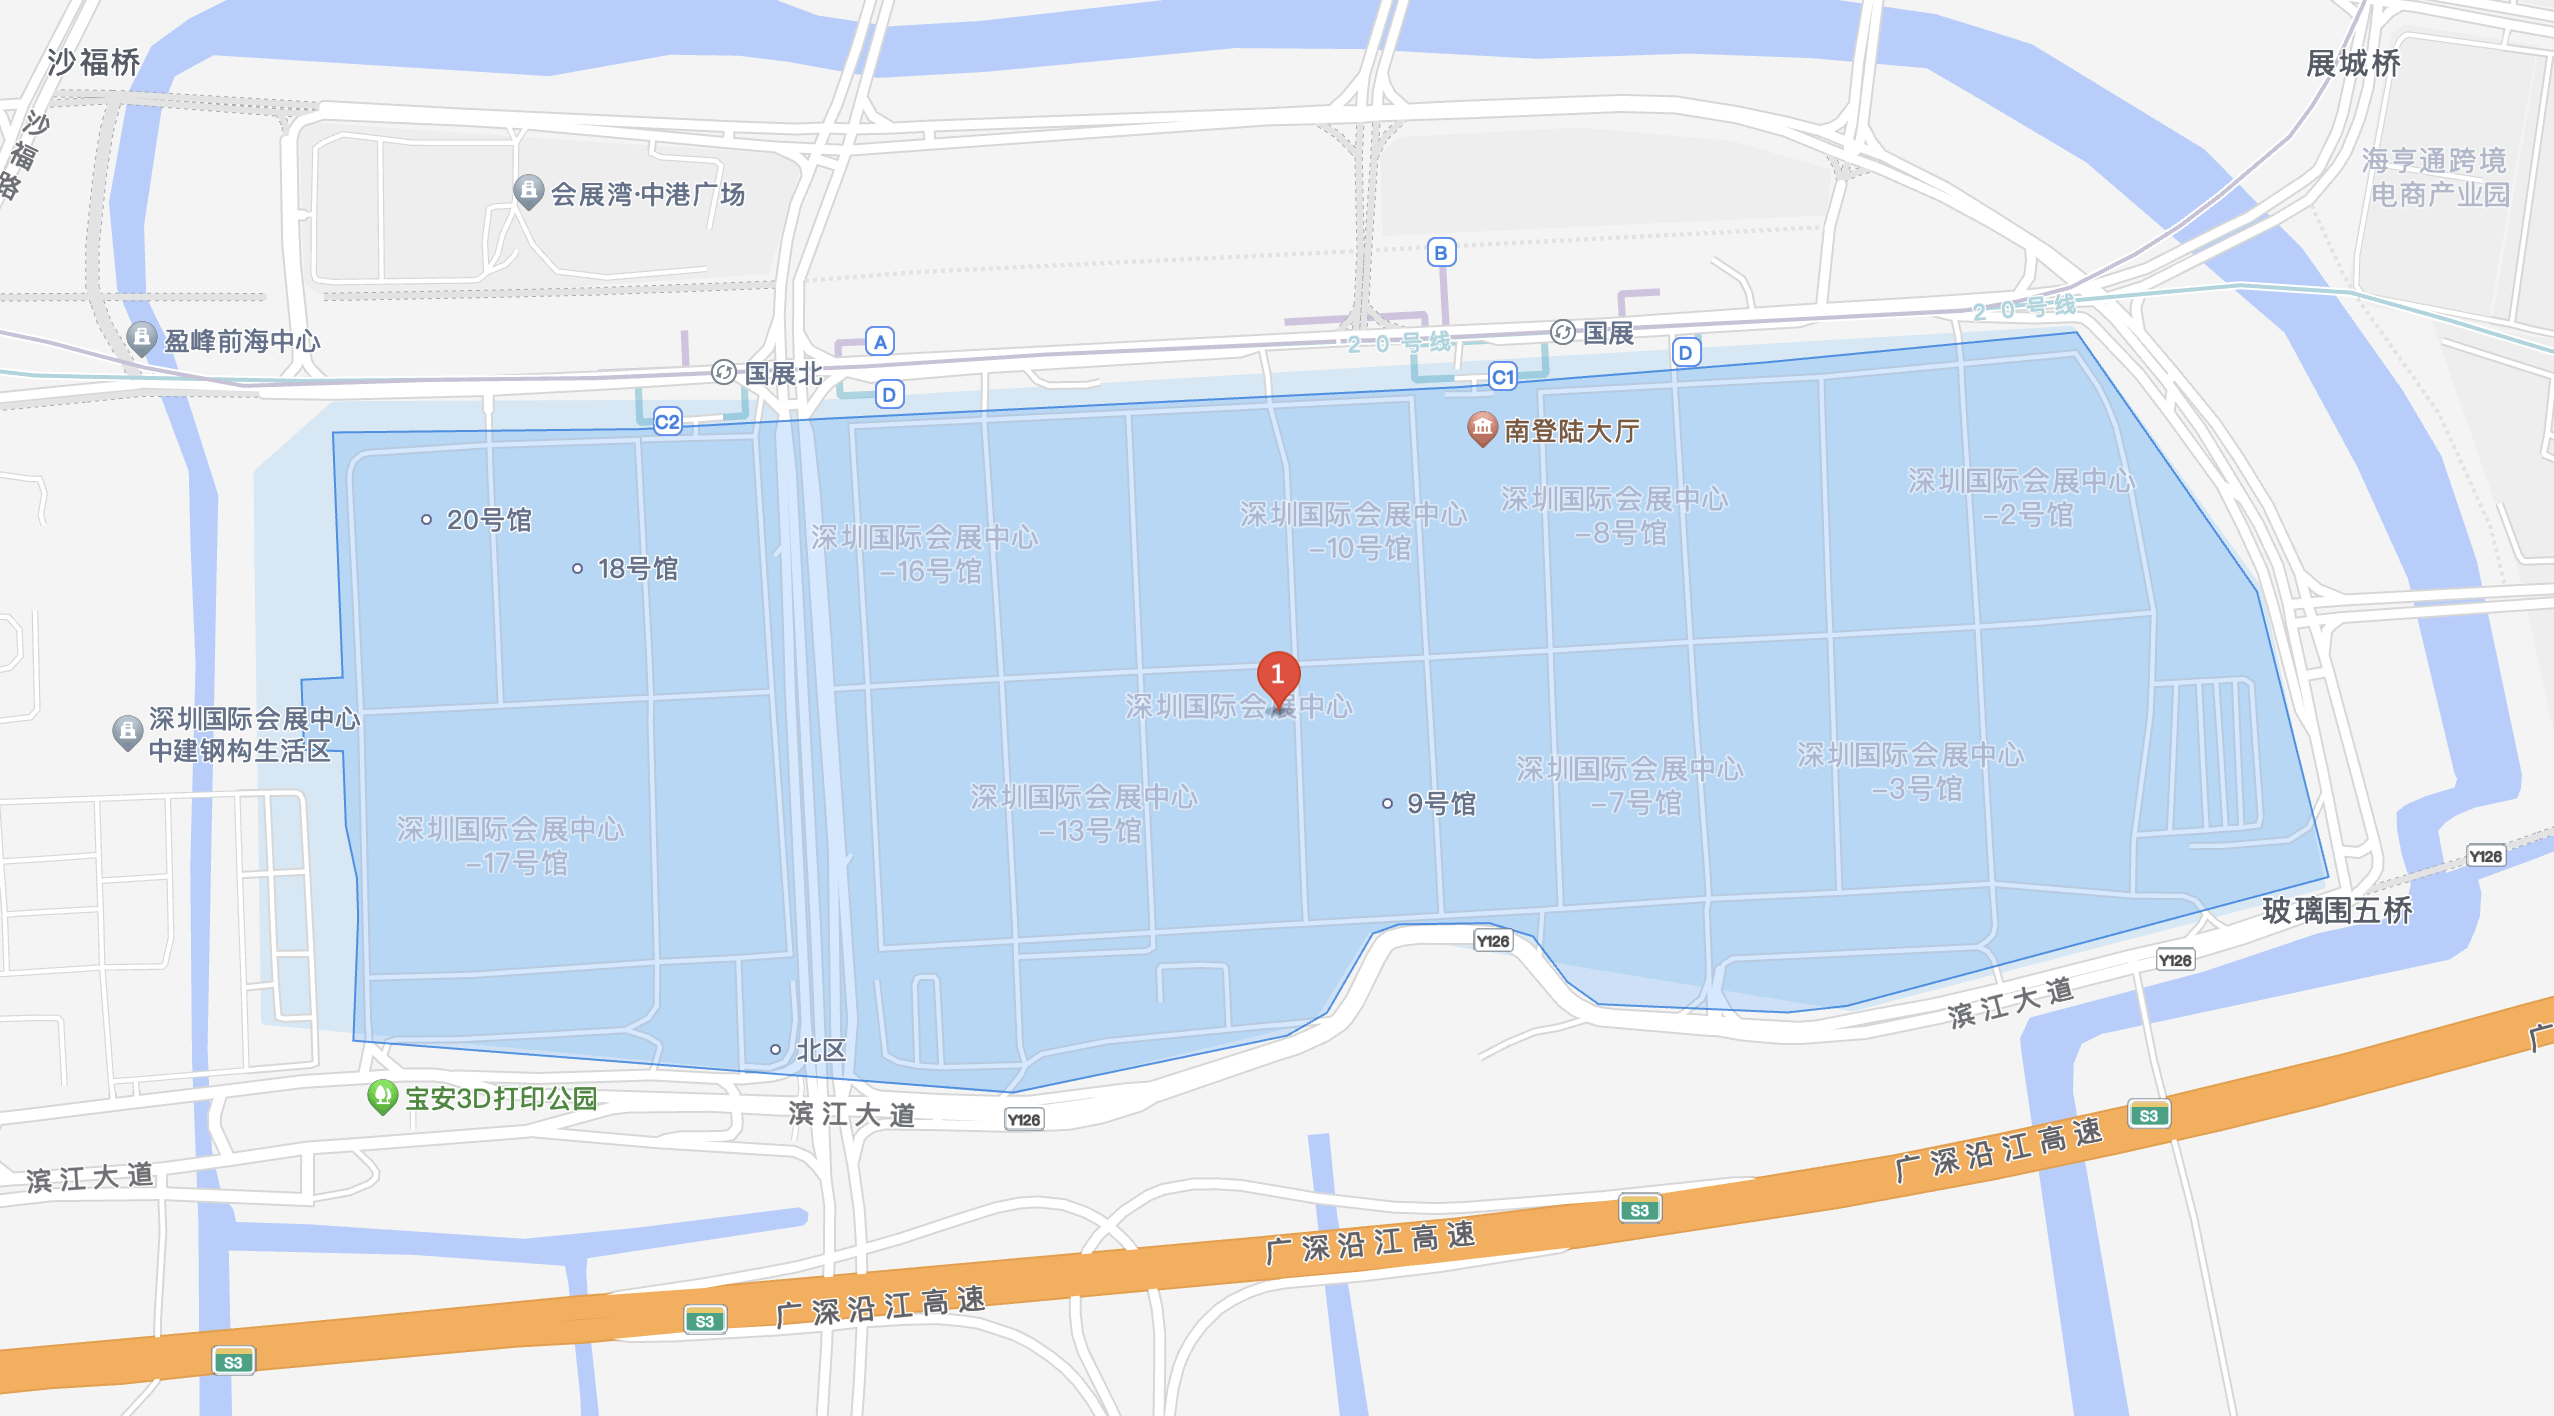 IOTE EXPO SHENZHEN LOCATION-Shenzhen World Exhibition Center (Bao'an District)